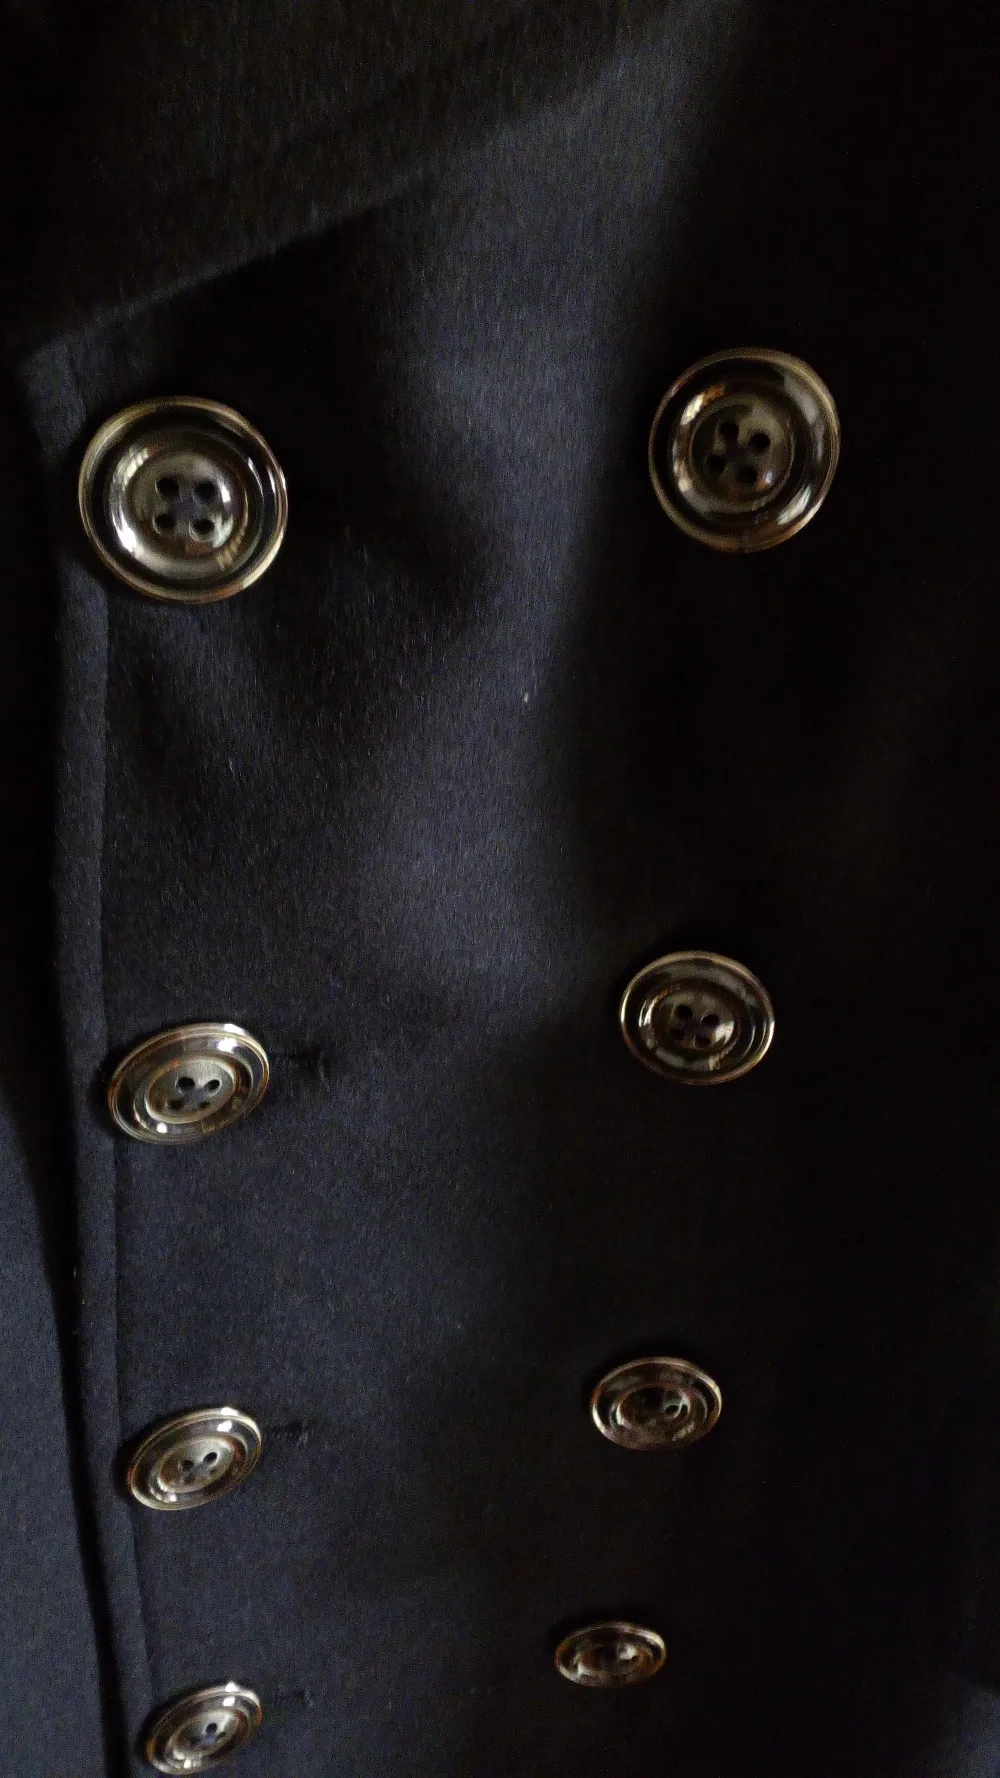 CHAOJUE длинные черные шерстяное пальто для мальчиков Осенняя мода с отложным воротником Большие размеры мужские шерстяное пальто s человек пальто